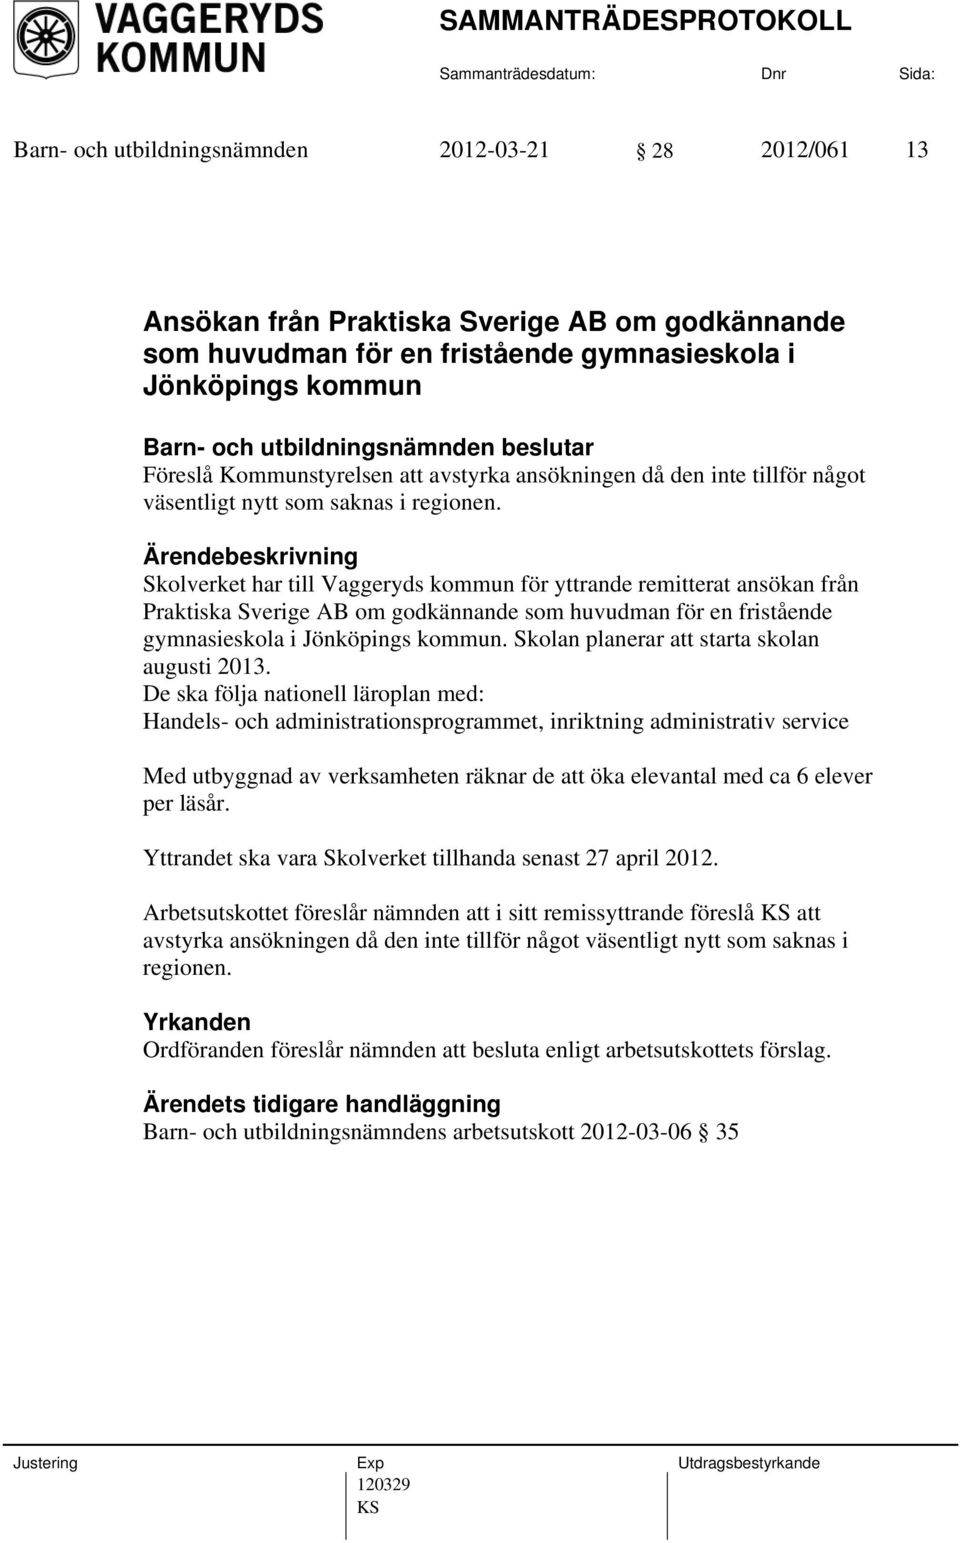 Skolverket har till Vaggeryds kommun för yttrande remitterat ansökan från Praktiska Sverige AB om godkännande som huvudman för en fristående gymnasieskola i Jönköpings kommun.